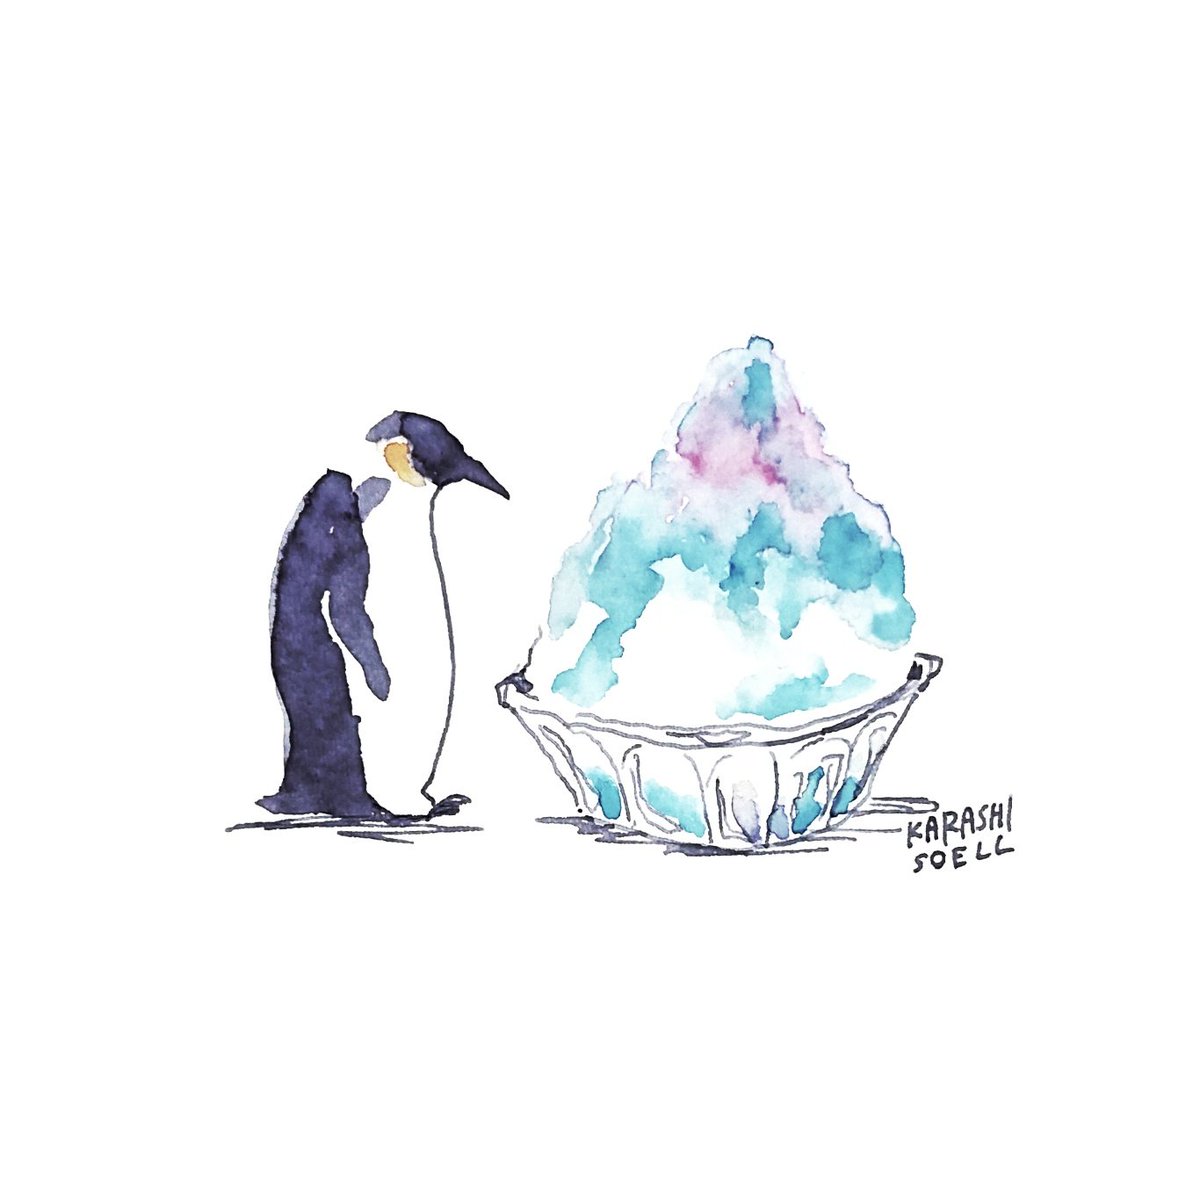 カラシソエル イラストレーター 今日のイラスト ペンギン かき氷と出会う 今日のカラシイラスト